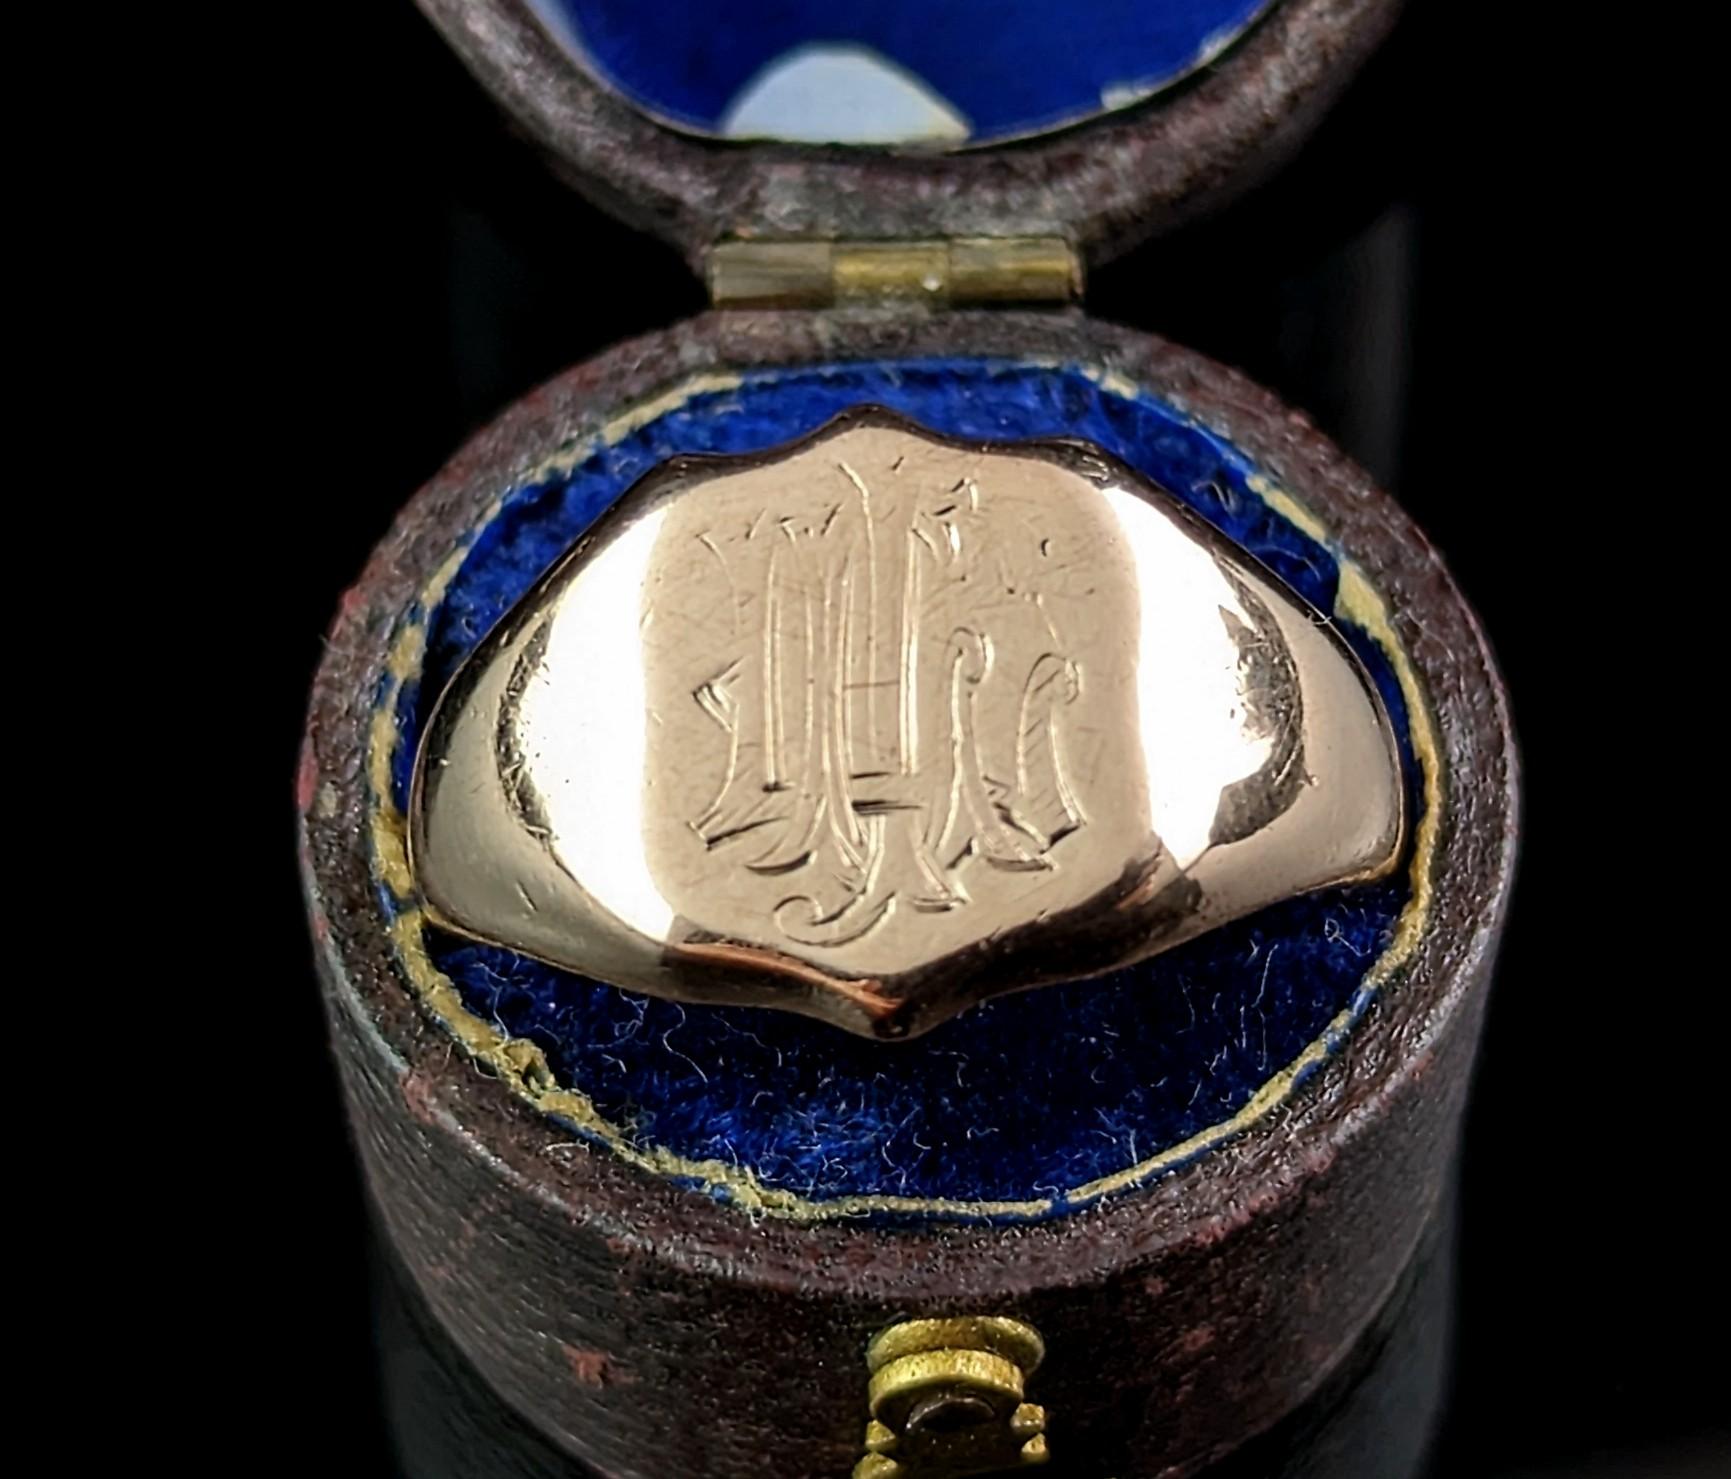 Dieser hübsche, antike Siegelring aus 9-karätigem Roségold hat einen warmen, wertvollen Charme.

Es hat ein schildförmiges Gesicht mit einem eingravierten Monogramm von Initialen, ist dies ein wenig abgenutzt, aber es könnte LCI oder ähnlich in